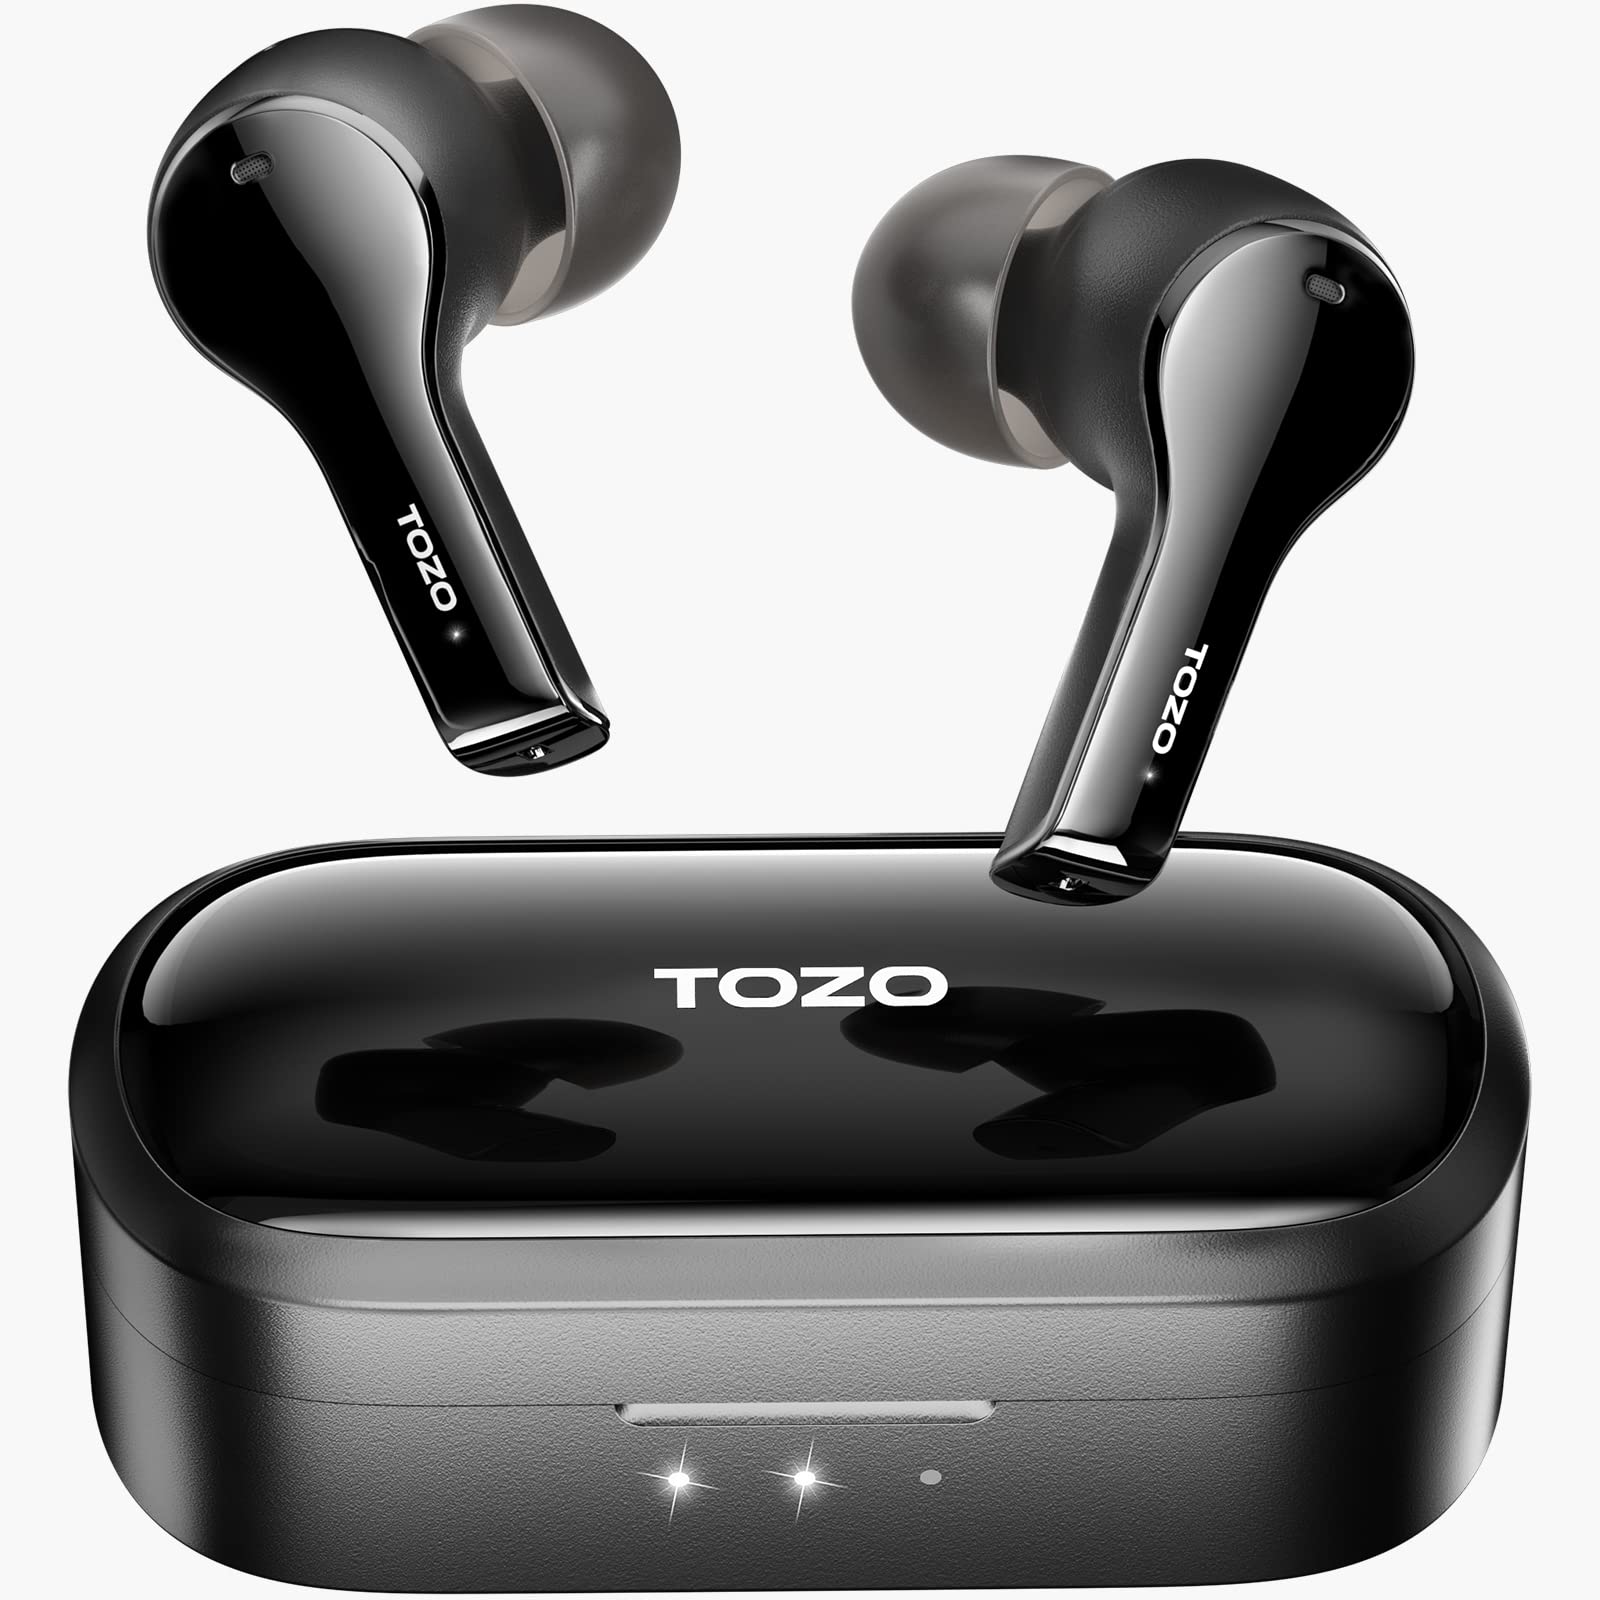  TOZO سماعات أذن لاسلكية T9 حقيقية لإلغاء الضوضاء البيئية 4 ميكروفون إلغاء الضوضاء للمكالمات سماعات عميقة تعمل...